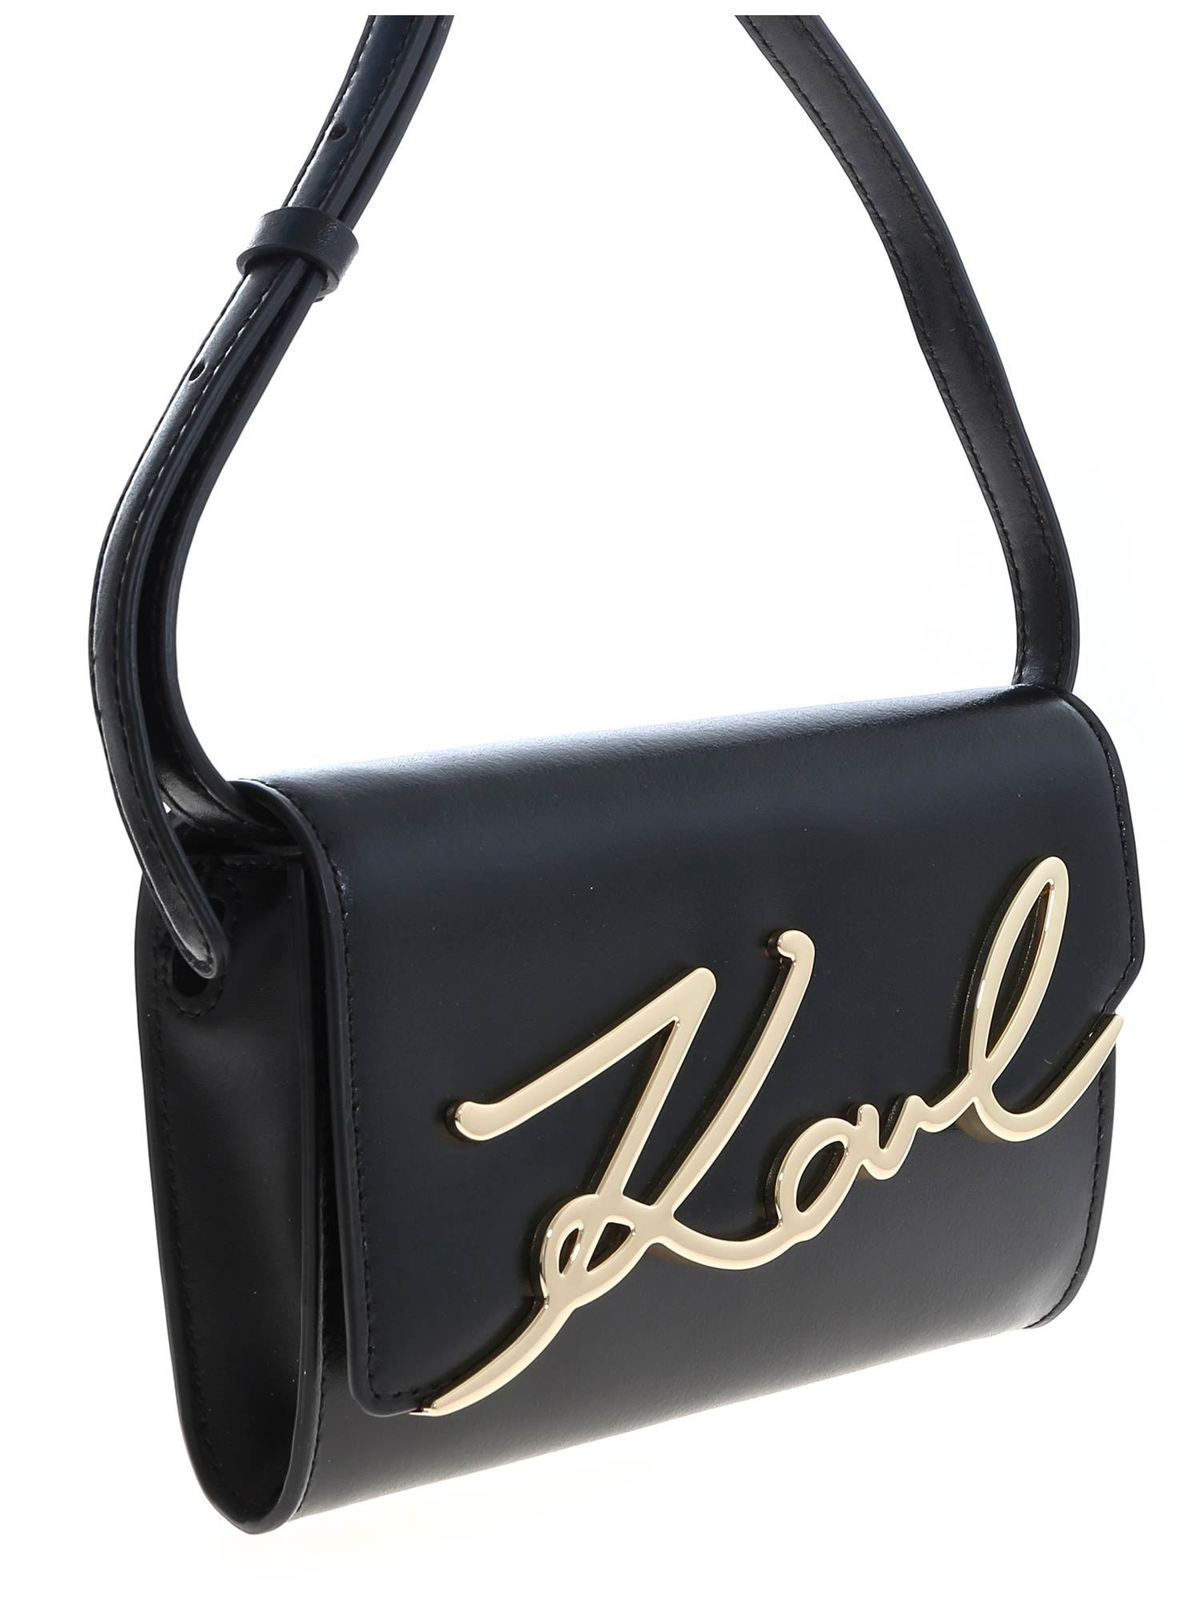 waarde sokken koper Belt bags Karl Lagerfeld - K Signature belt bag in black - 201W3102BLACKGOLD